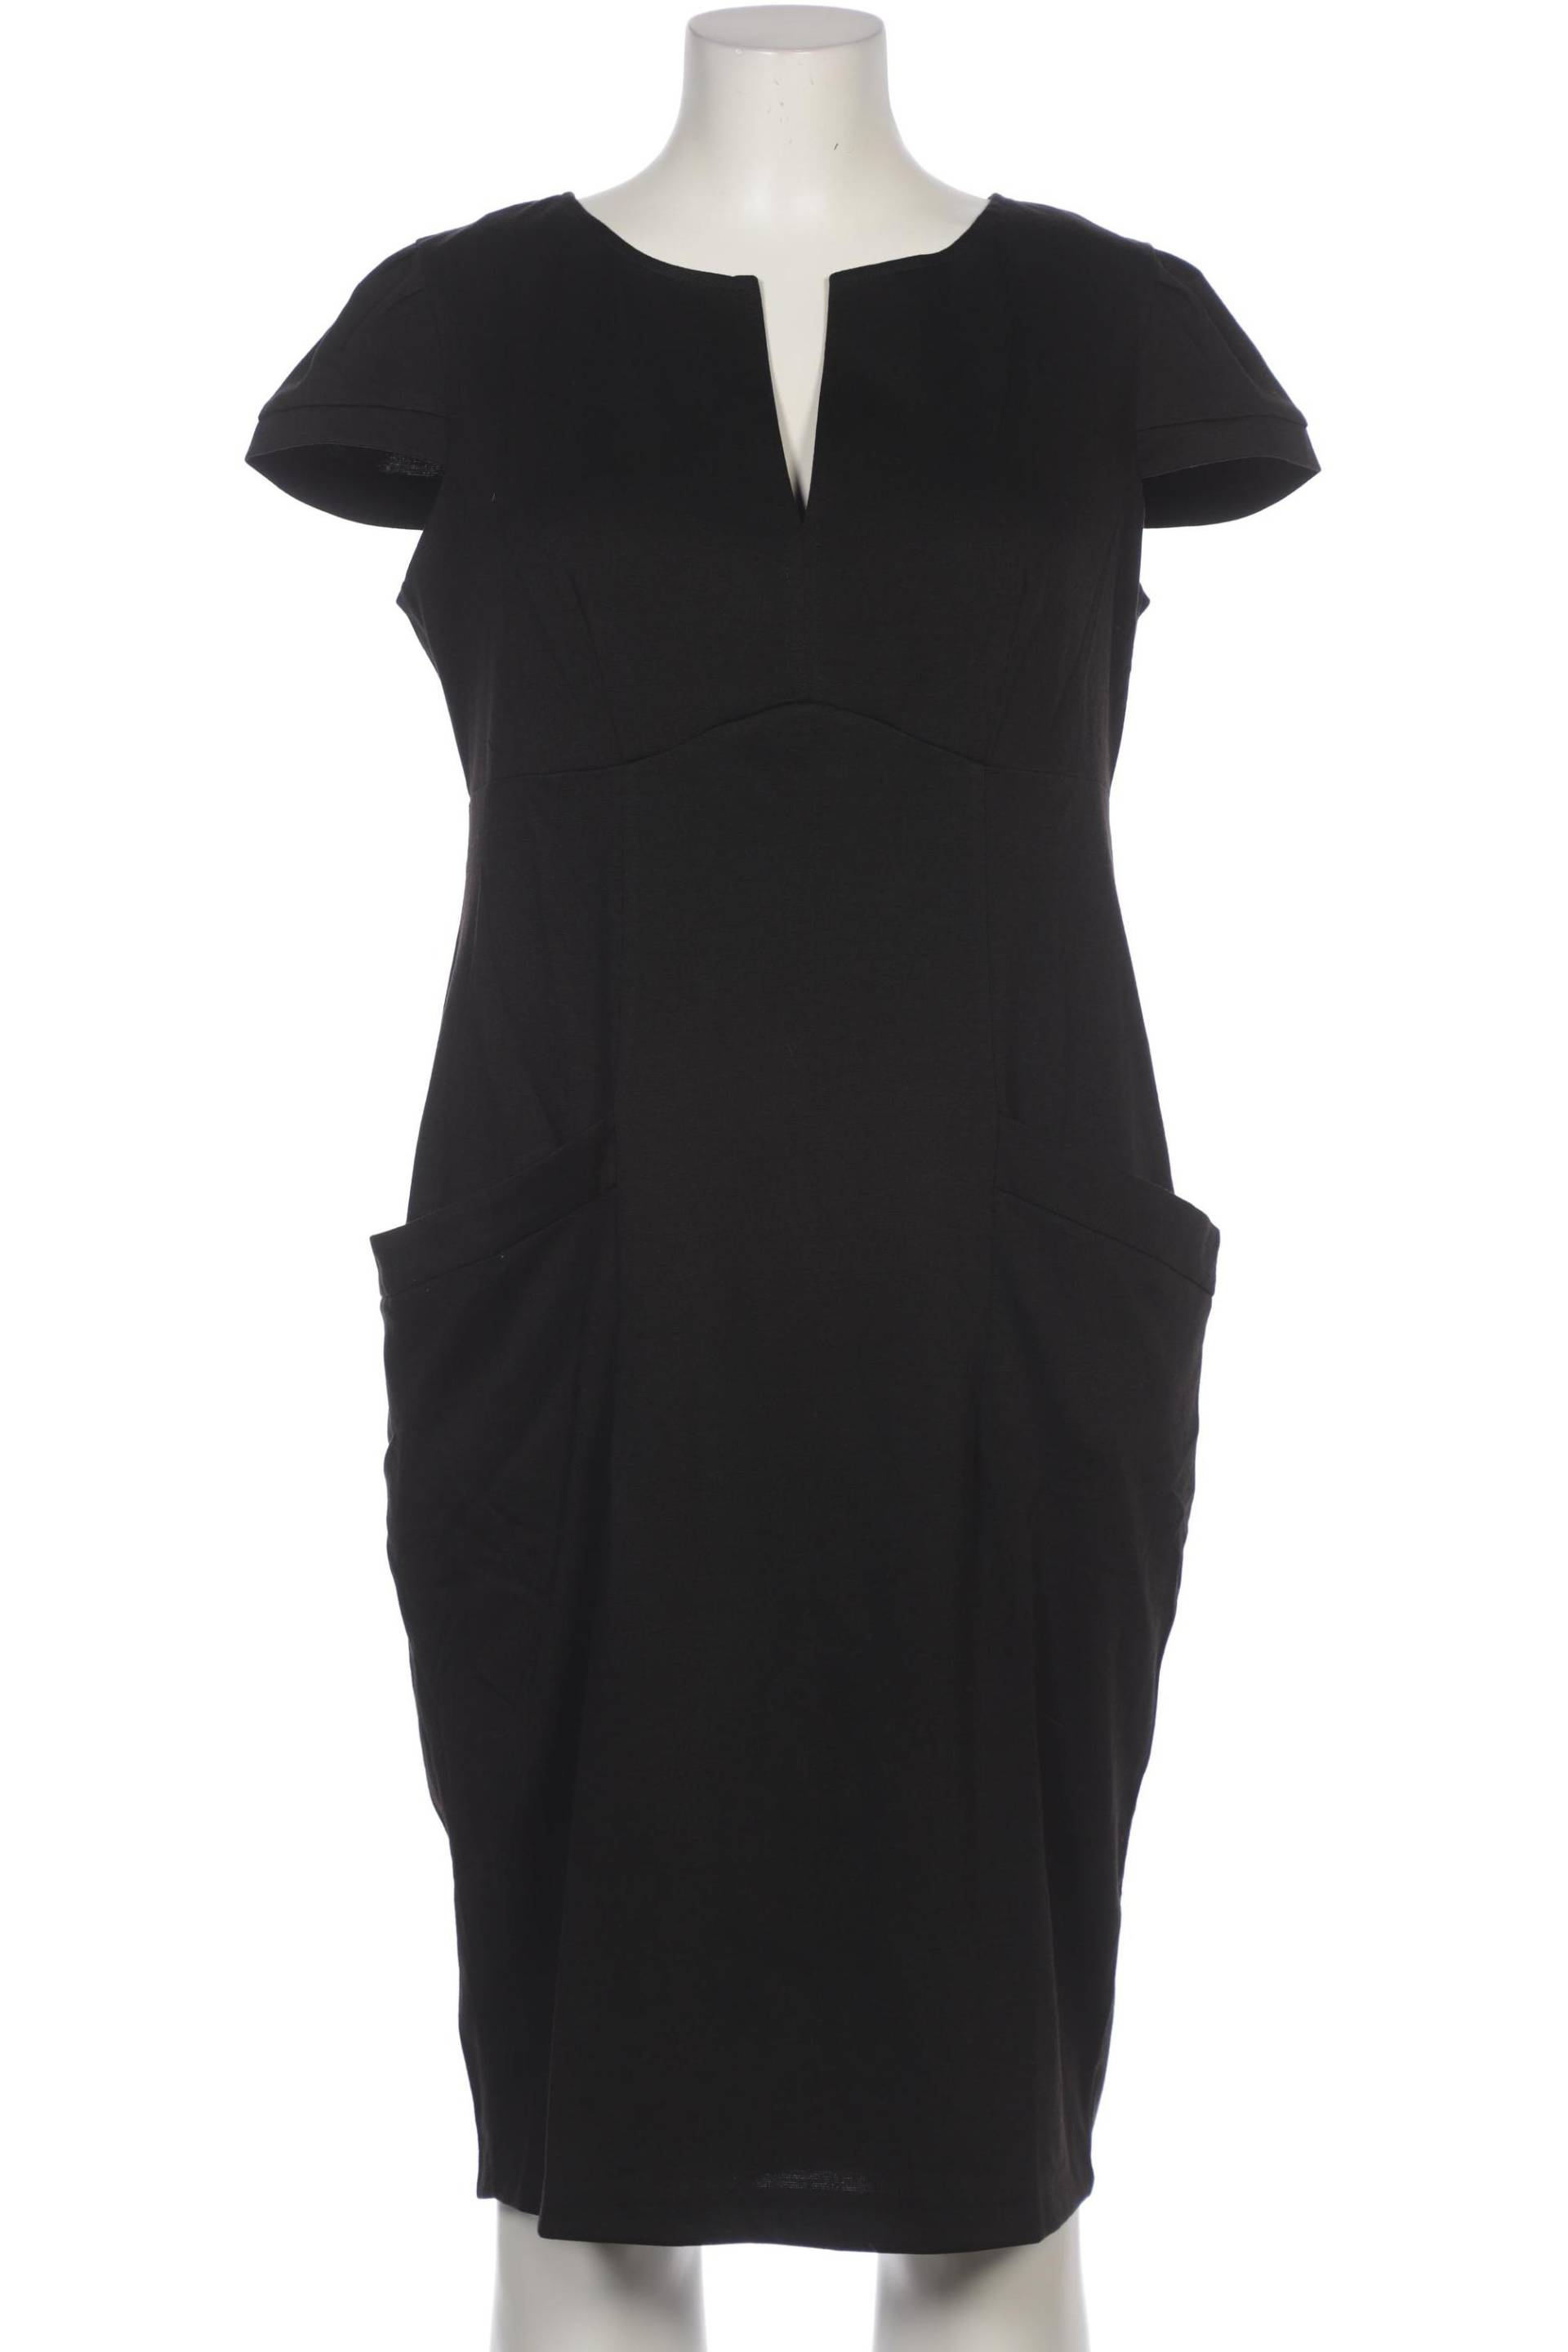 asos Curve Damen Kleid, schwarz, Gr. 48 von ASOS Curve